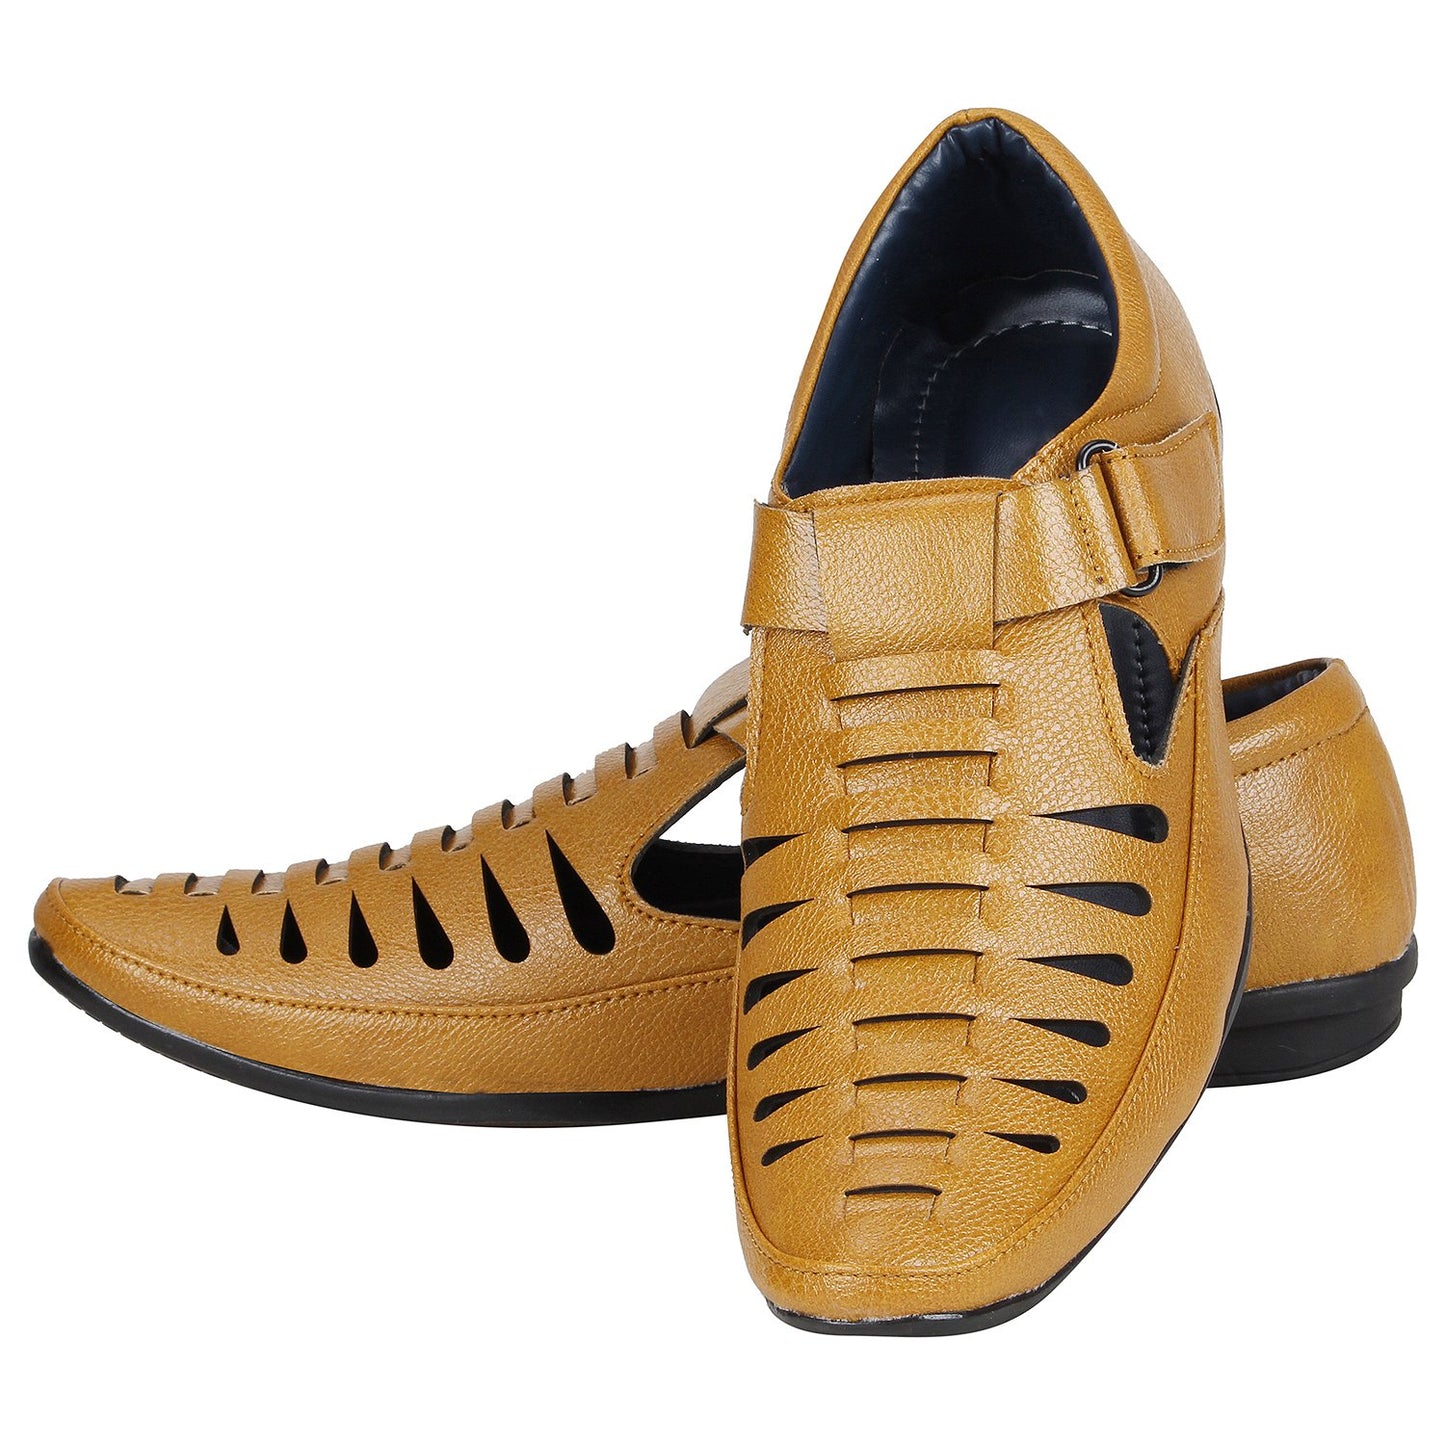 Big Fox Roman Sandals for Men